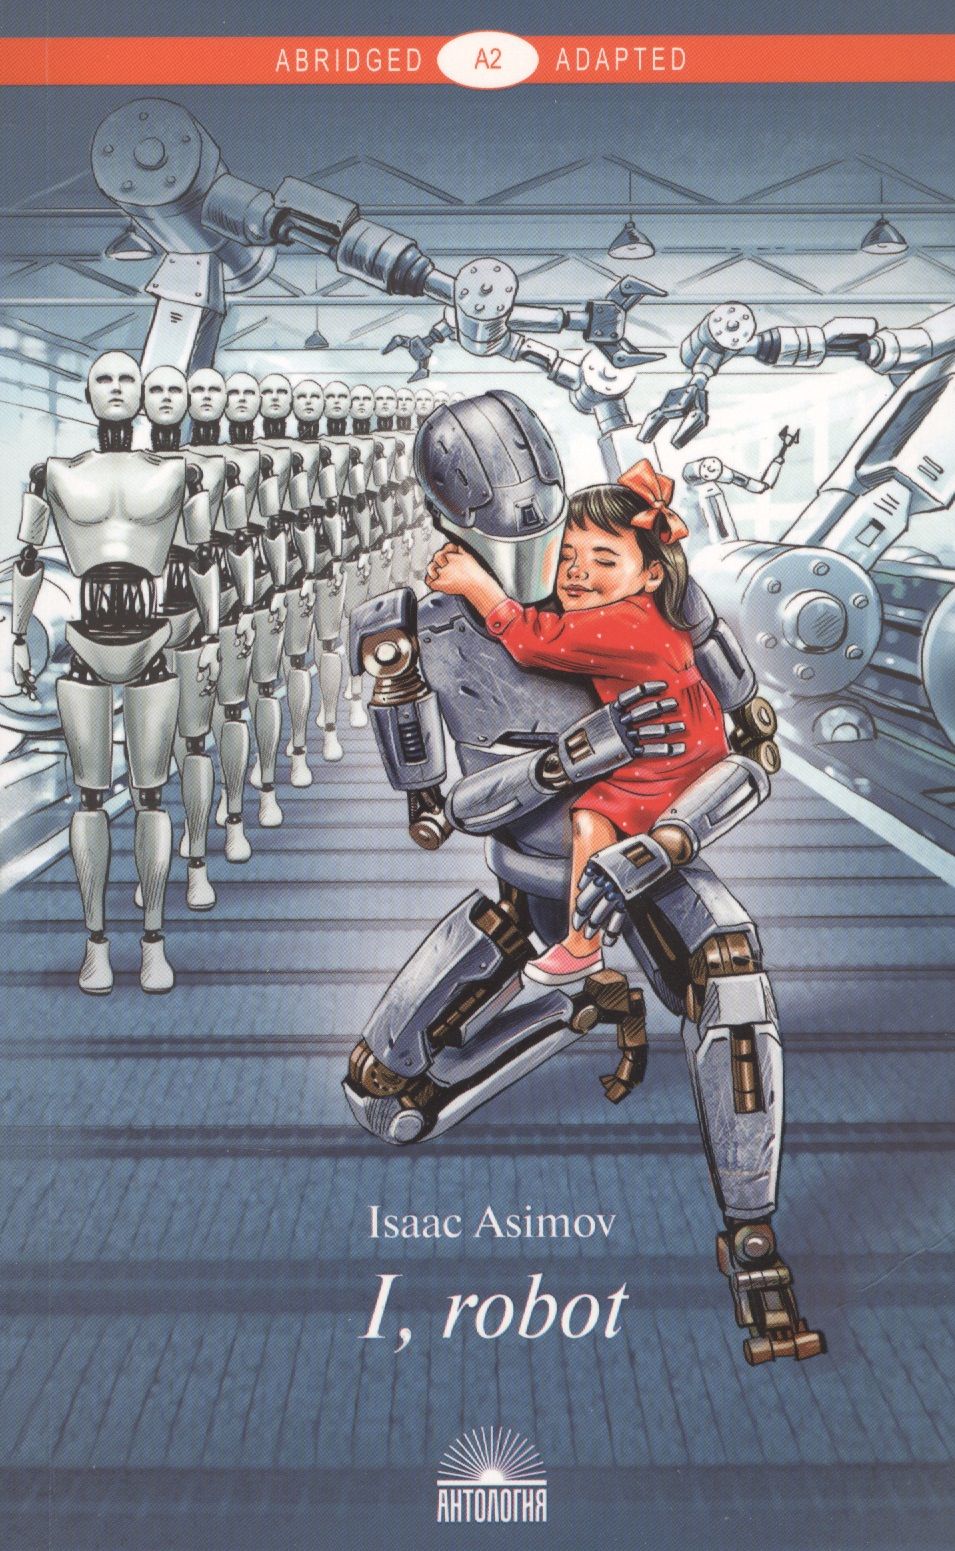 Айзек Азимов "я, робот". Айзек Азимов book i Robot. Книга Айзека Азимова я робот. Айзек Азимов обложки книги я робот.